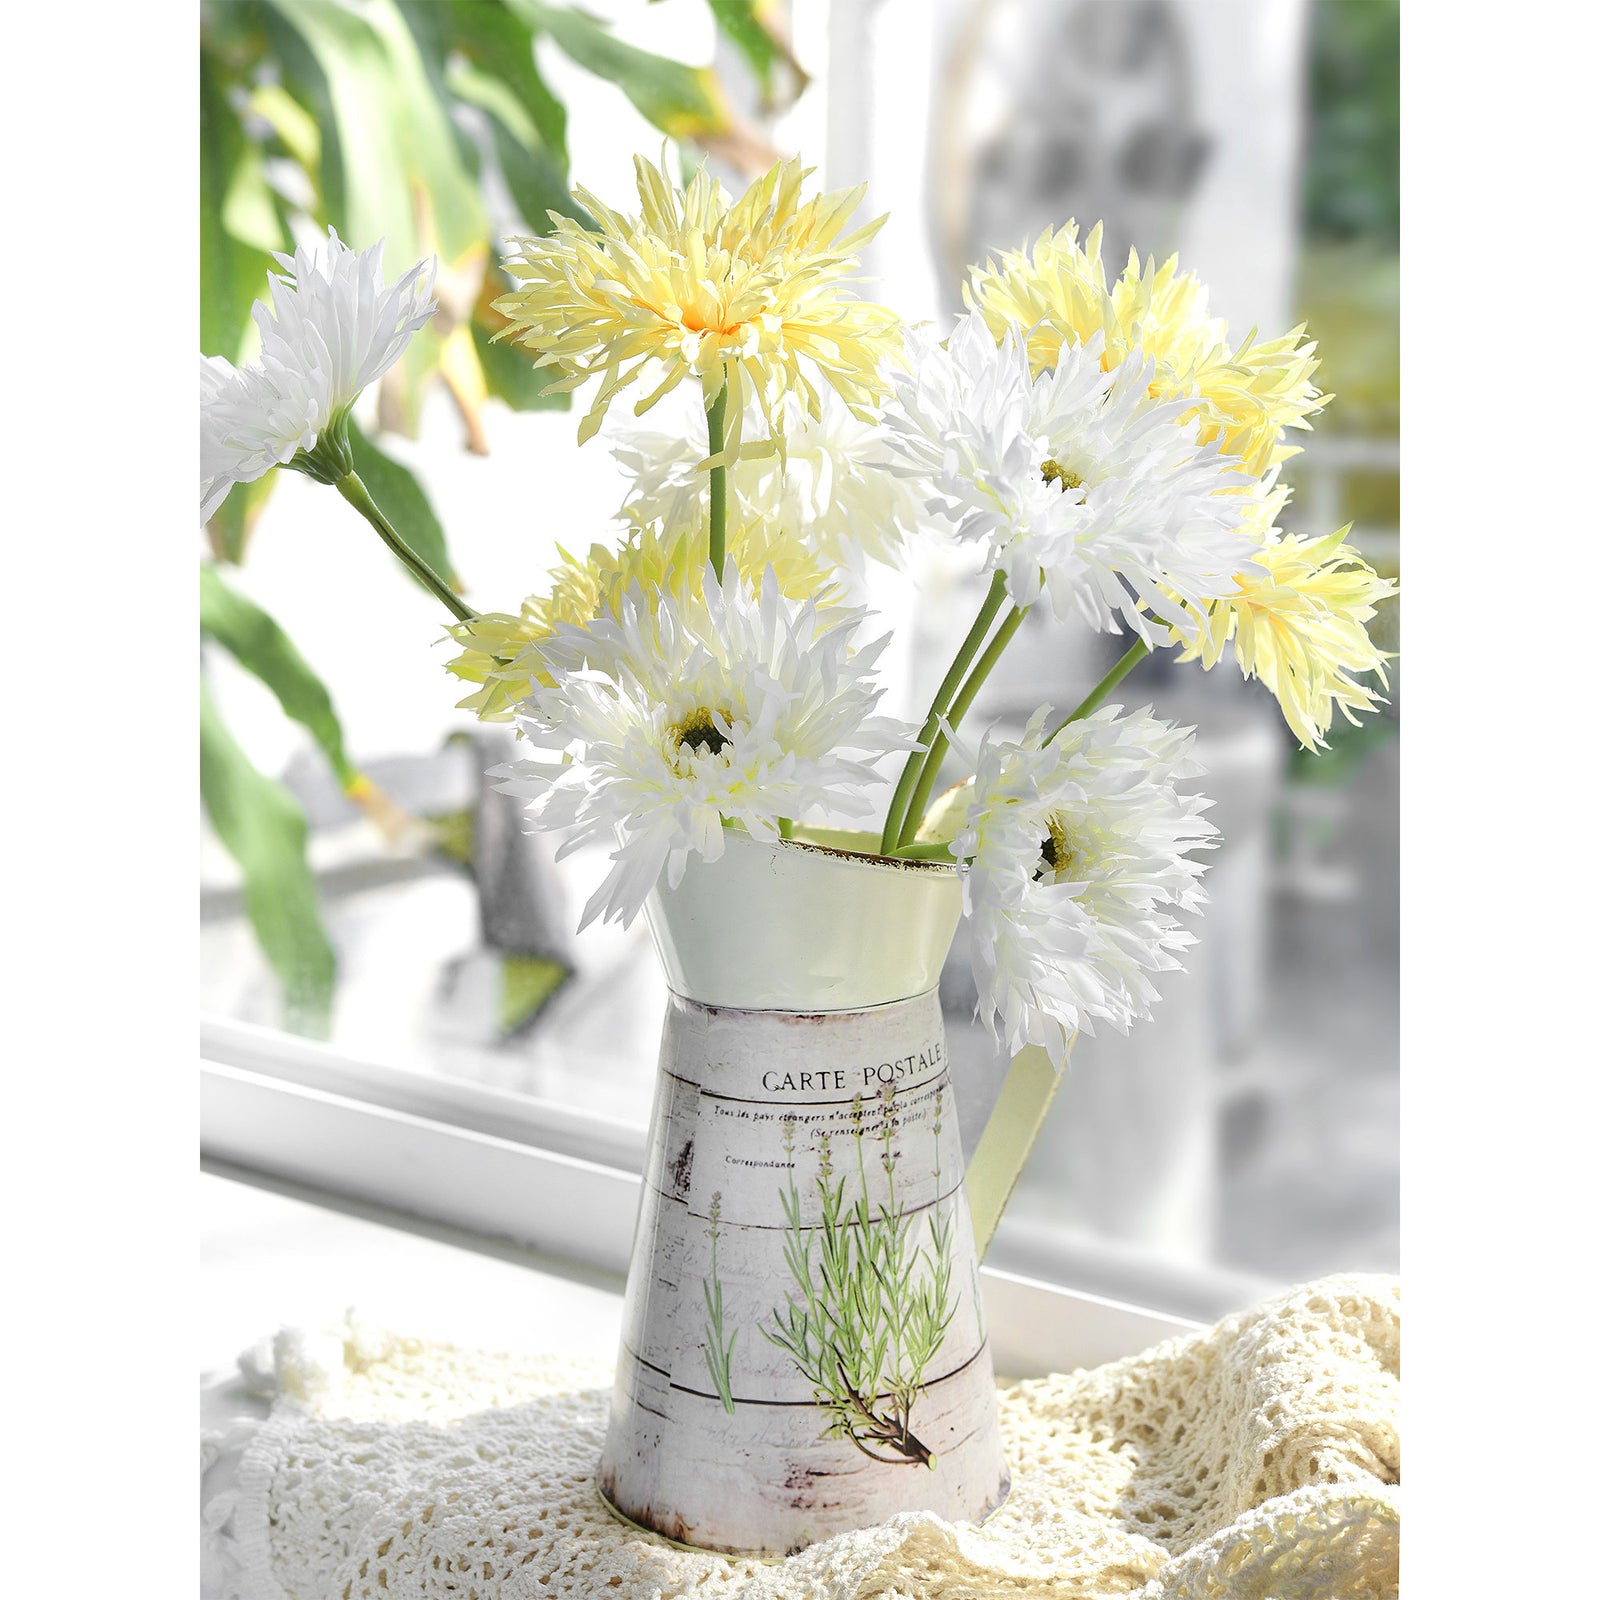 Mint Cream Spider Gerbera Daisies Silk Flowers Real Looking Artificial flowers Home Décor 16.5'' (6 Stems) FiveSeasonStuff